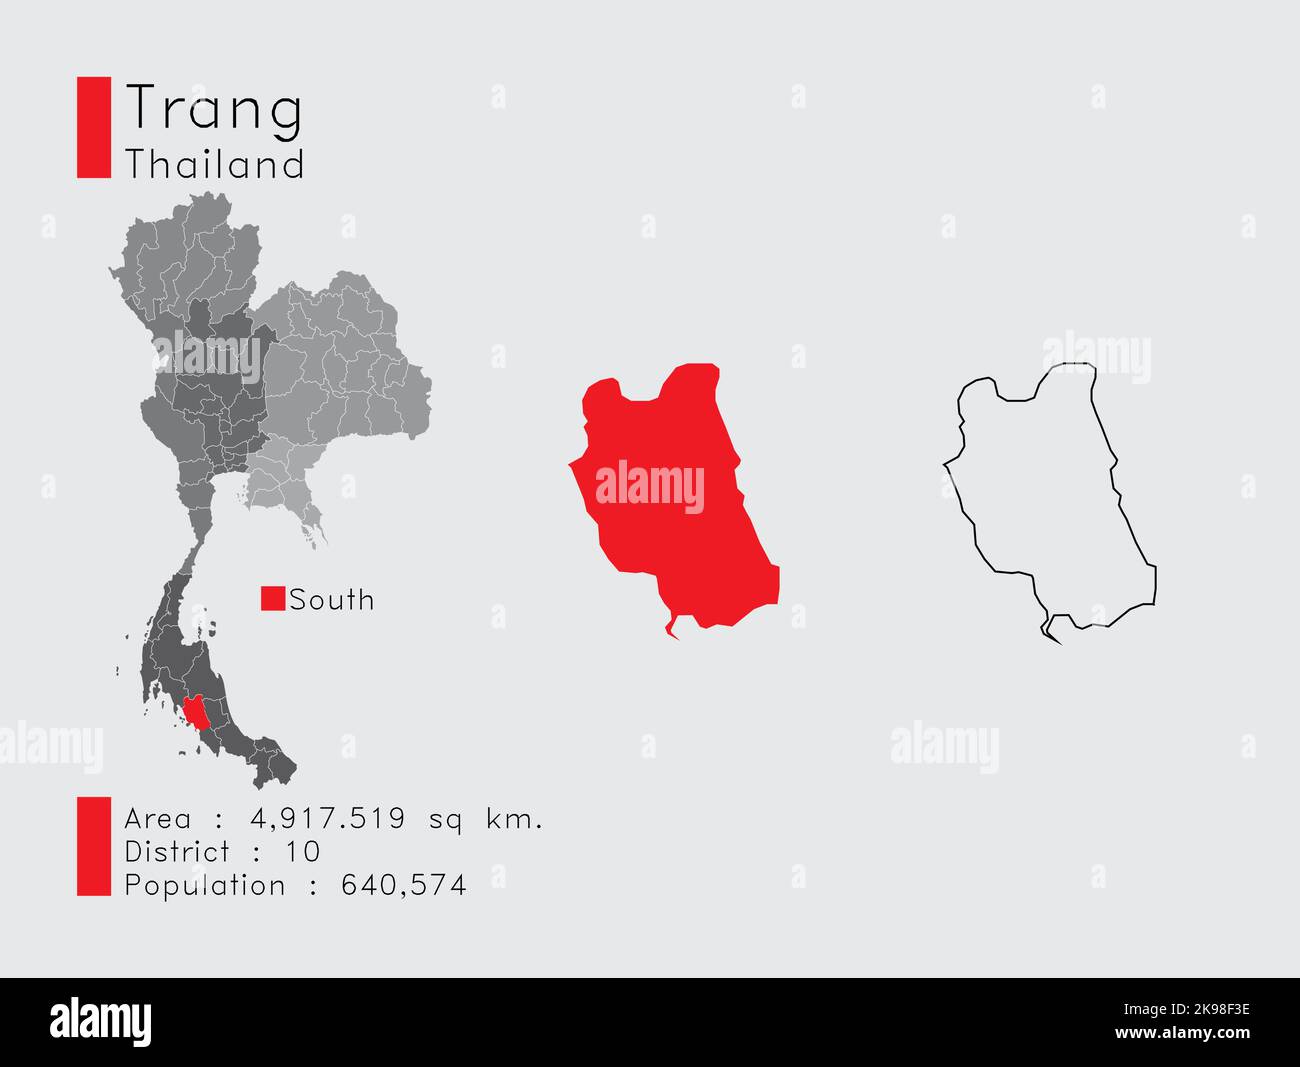 Eine Reihe von Infografik-Elementen für die Provinz Trang Position in Thailand. Und Region Distrikt Bevölkerung und Gliederung. Vektor mit grauem Hintergrund. Stock Vektor